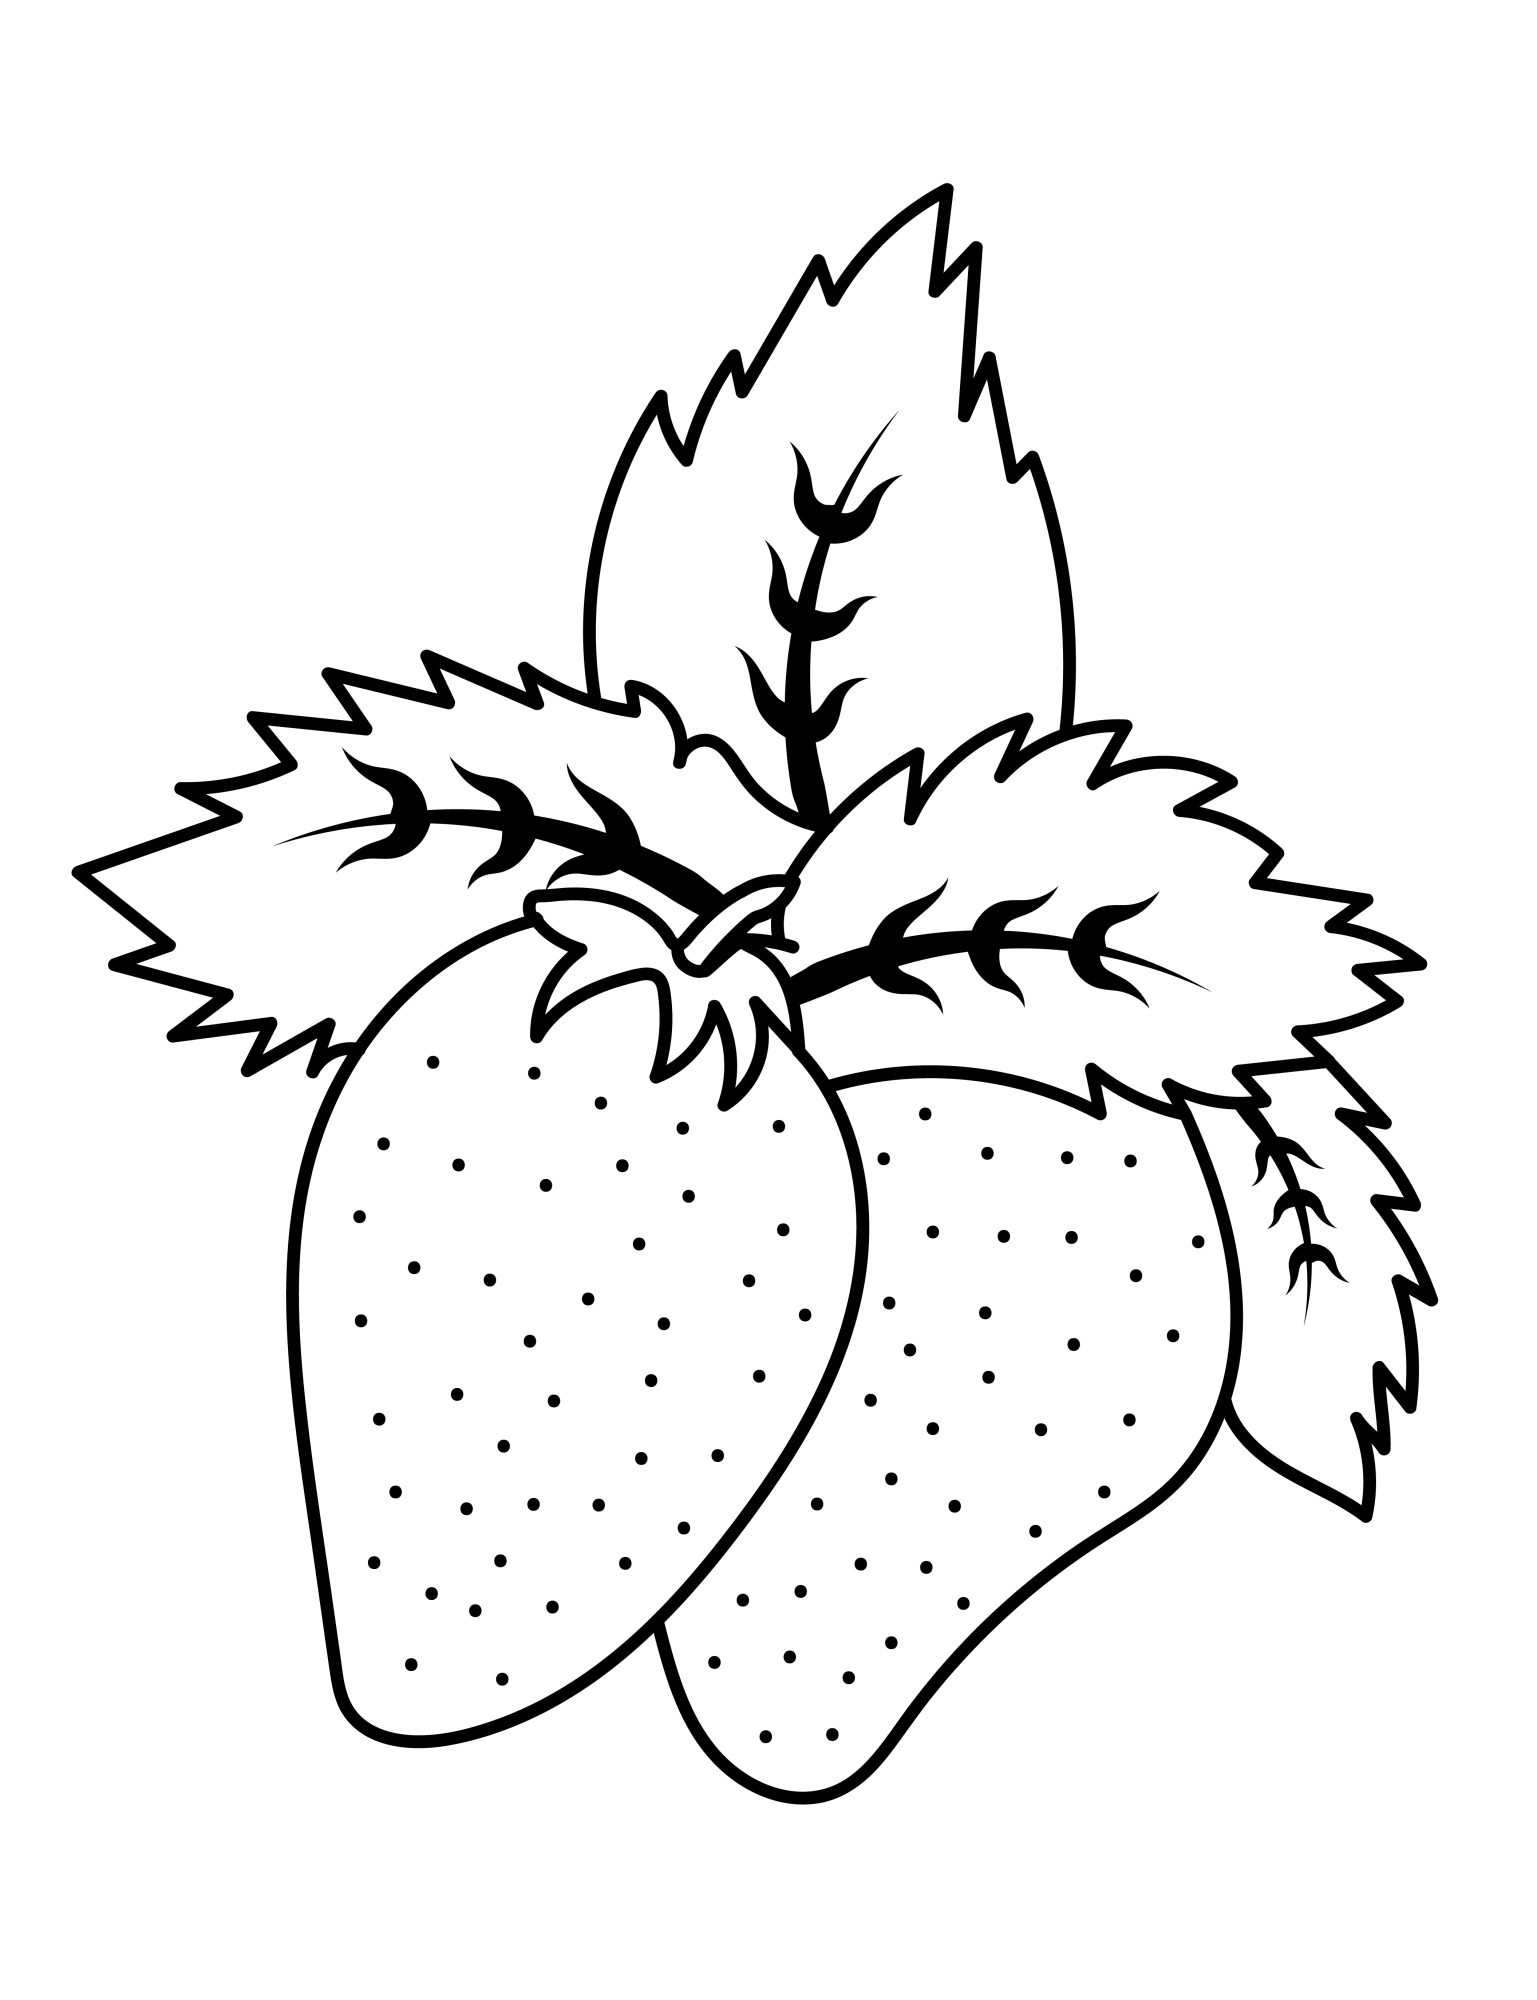 Раскраска для детей: ягода клубника с листьями